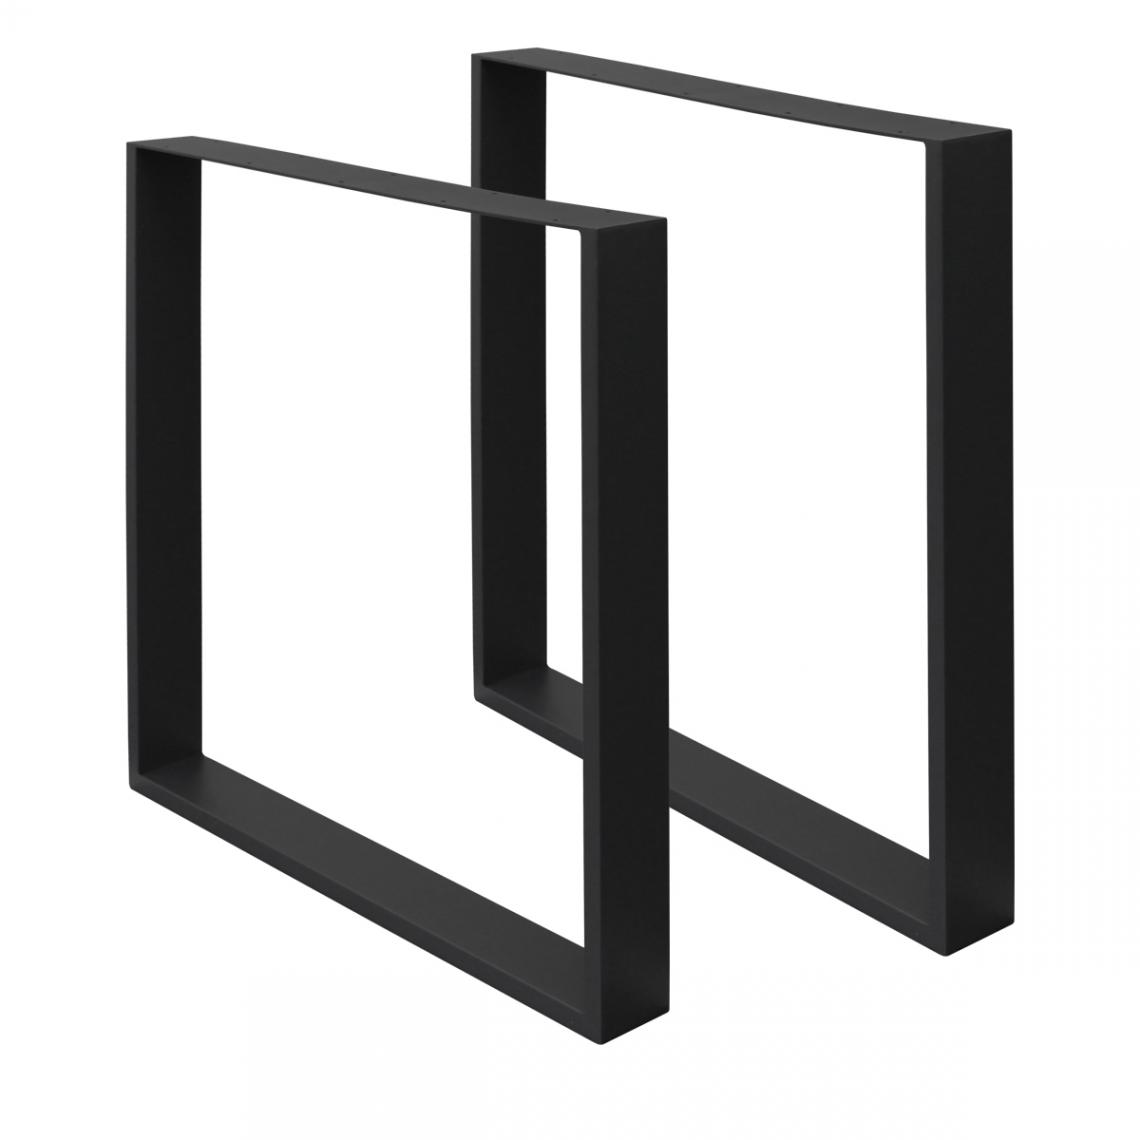 Ecd Germany - 2 x Pieds de table en acier noir 70 x 72 cm support rectangulaire style moderne - Pieds & roulettes pour meuble